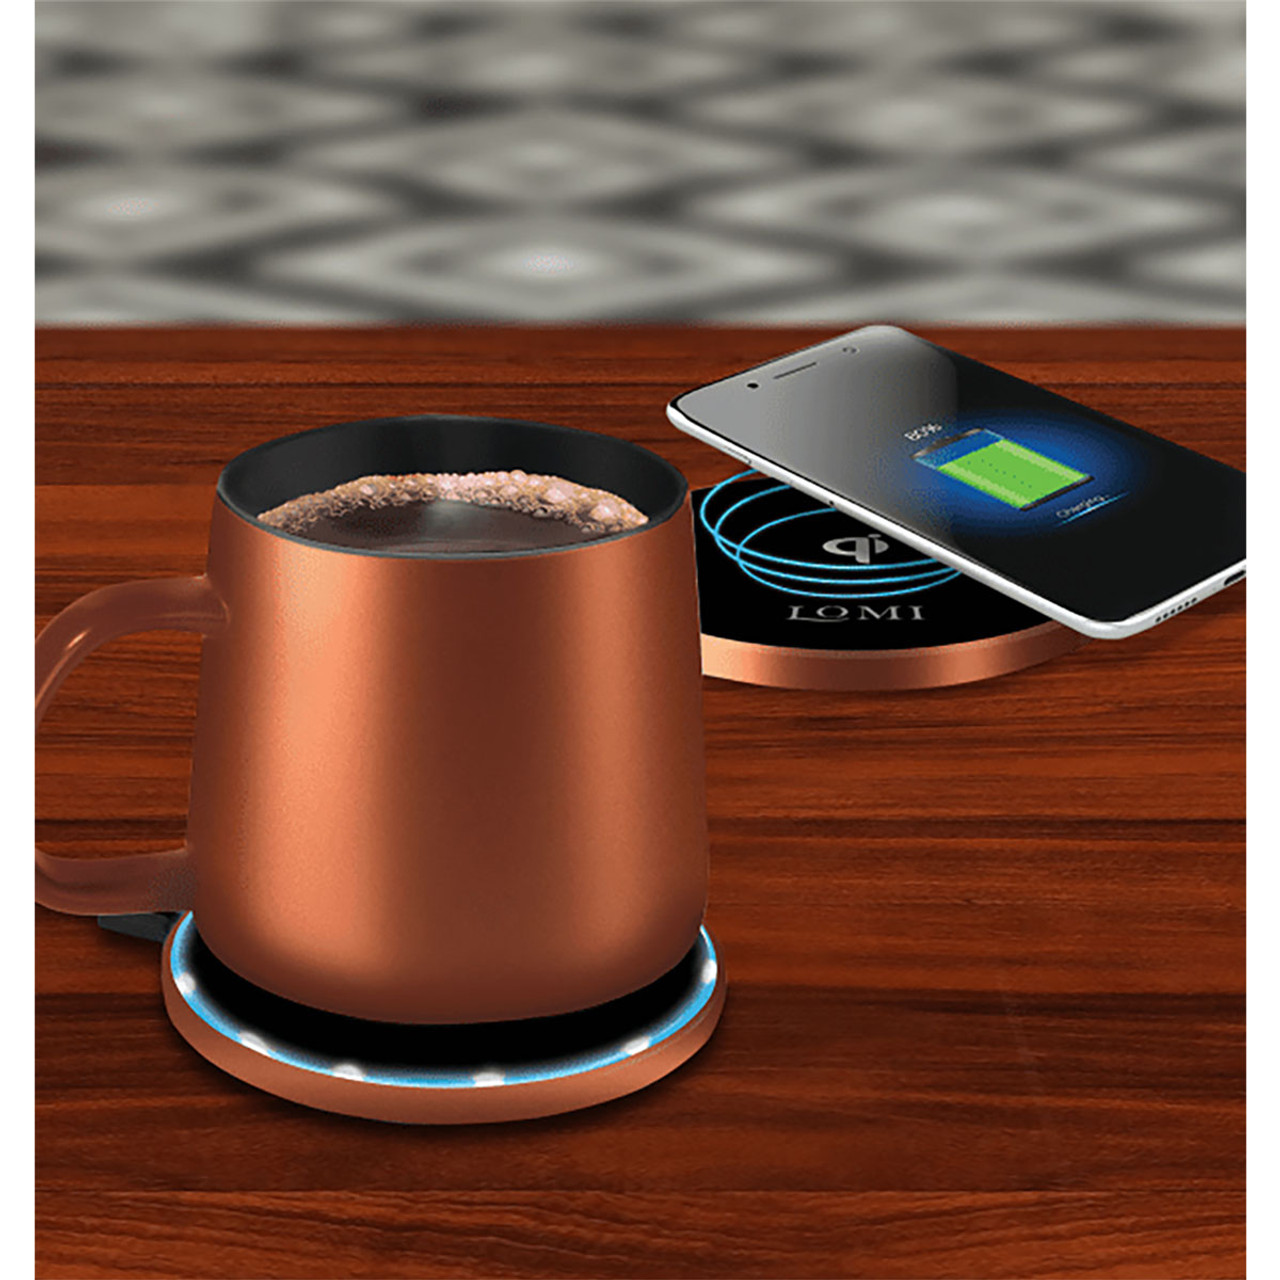  2 in 1 Wireless Charging Pad,Coffee Mug Warmer